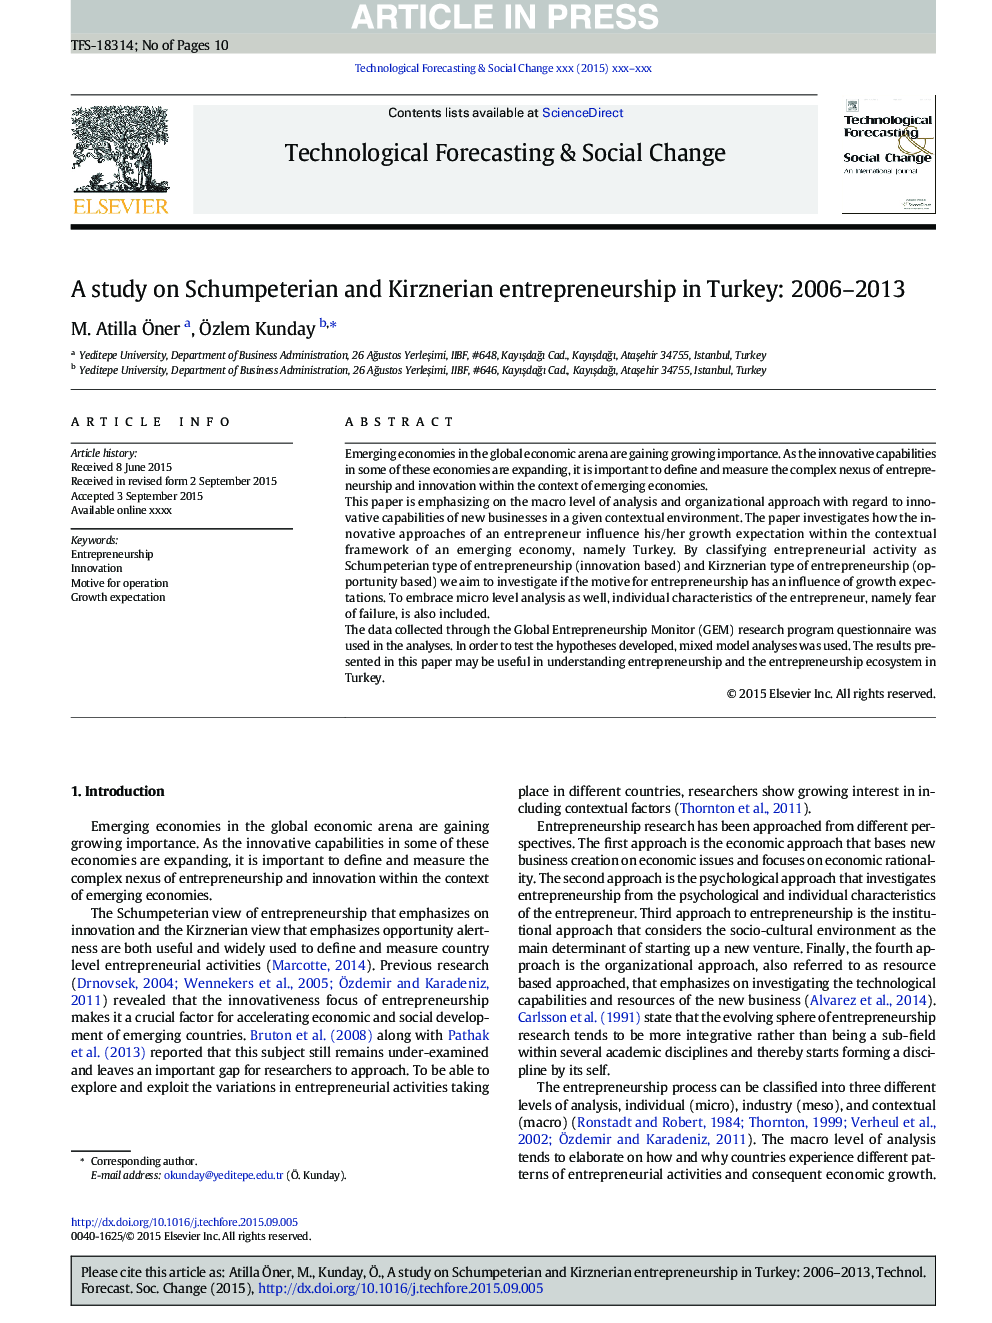 مطالعهی کارآفرینی شومپتورین و کرزنری در ترکیه: 2006-2013 